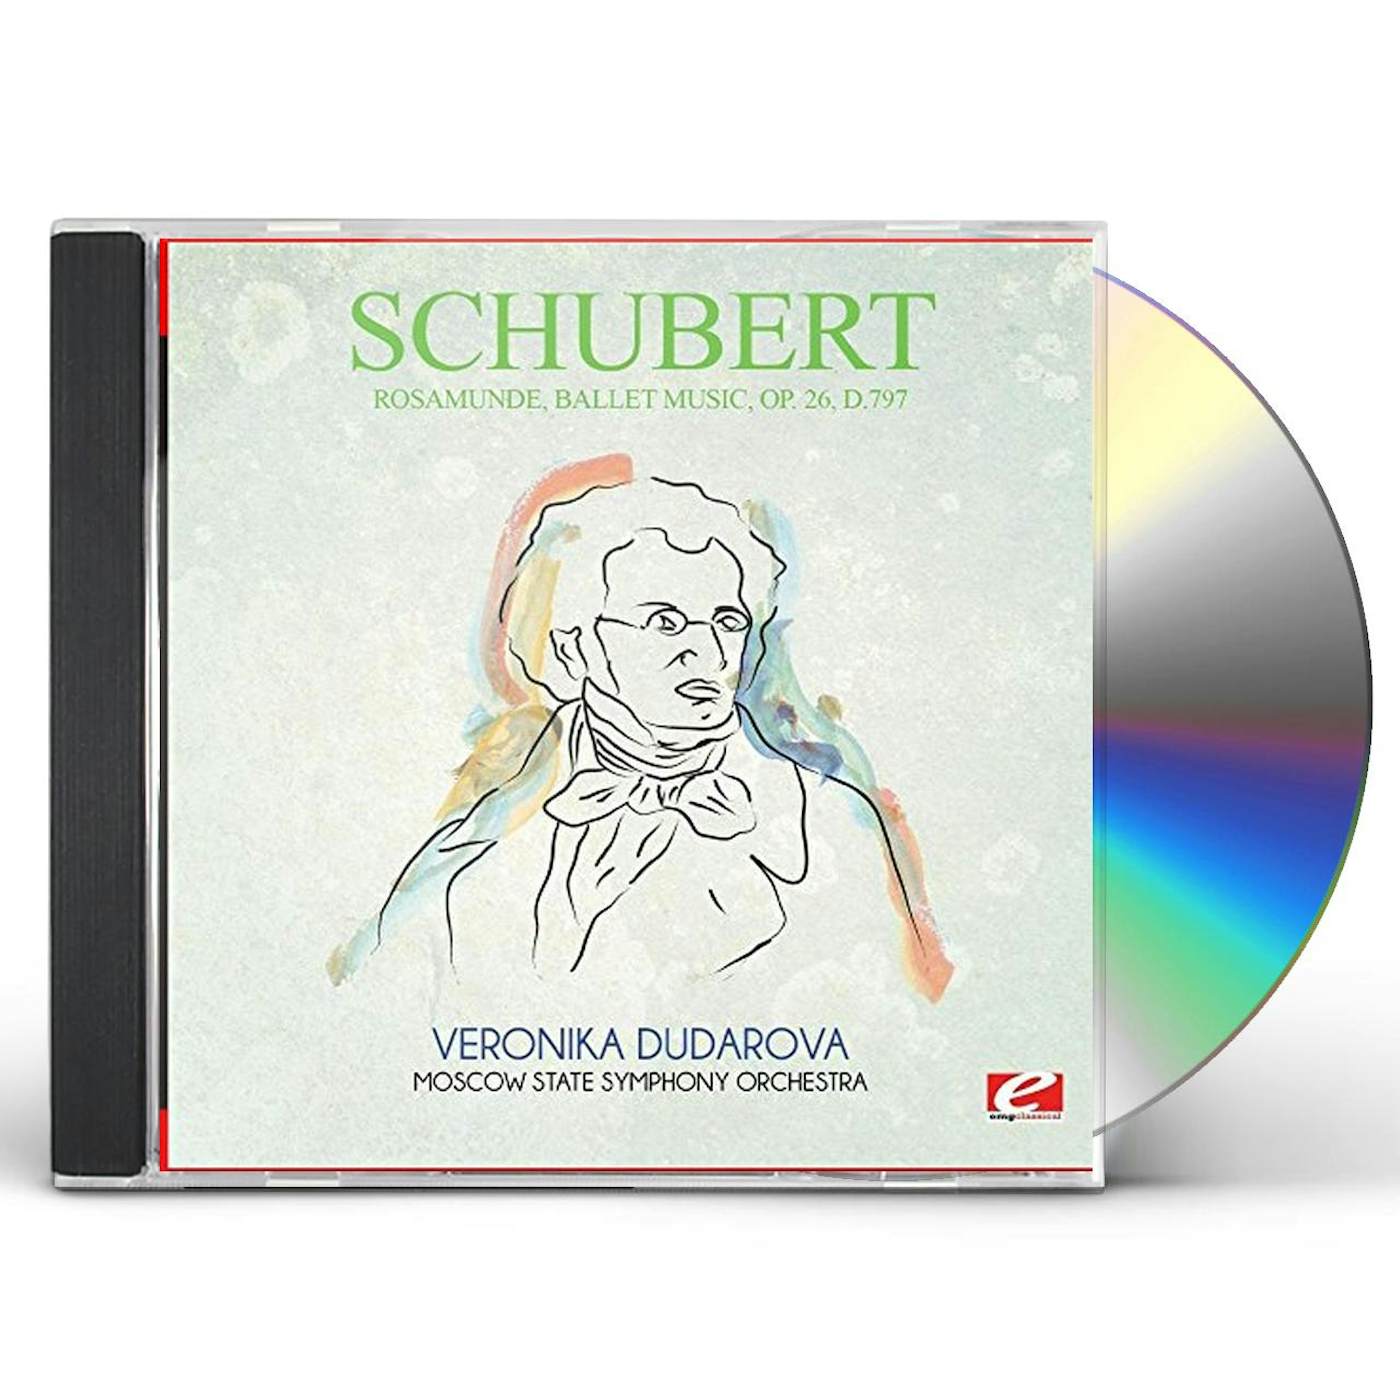 Schubert ROSAMUNDE BALLET MUSIC OP. 26 D.797 CD